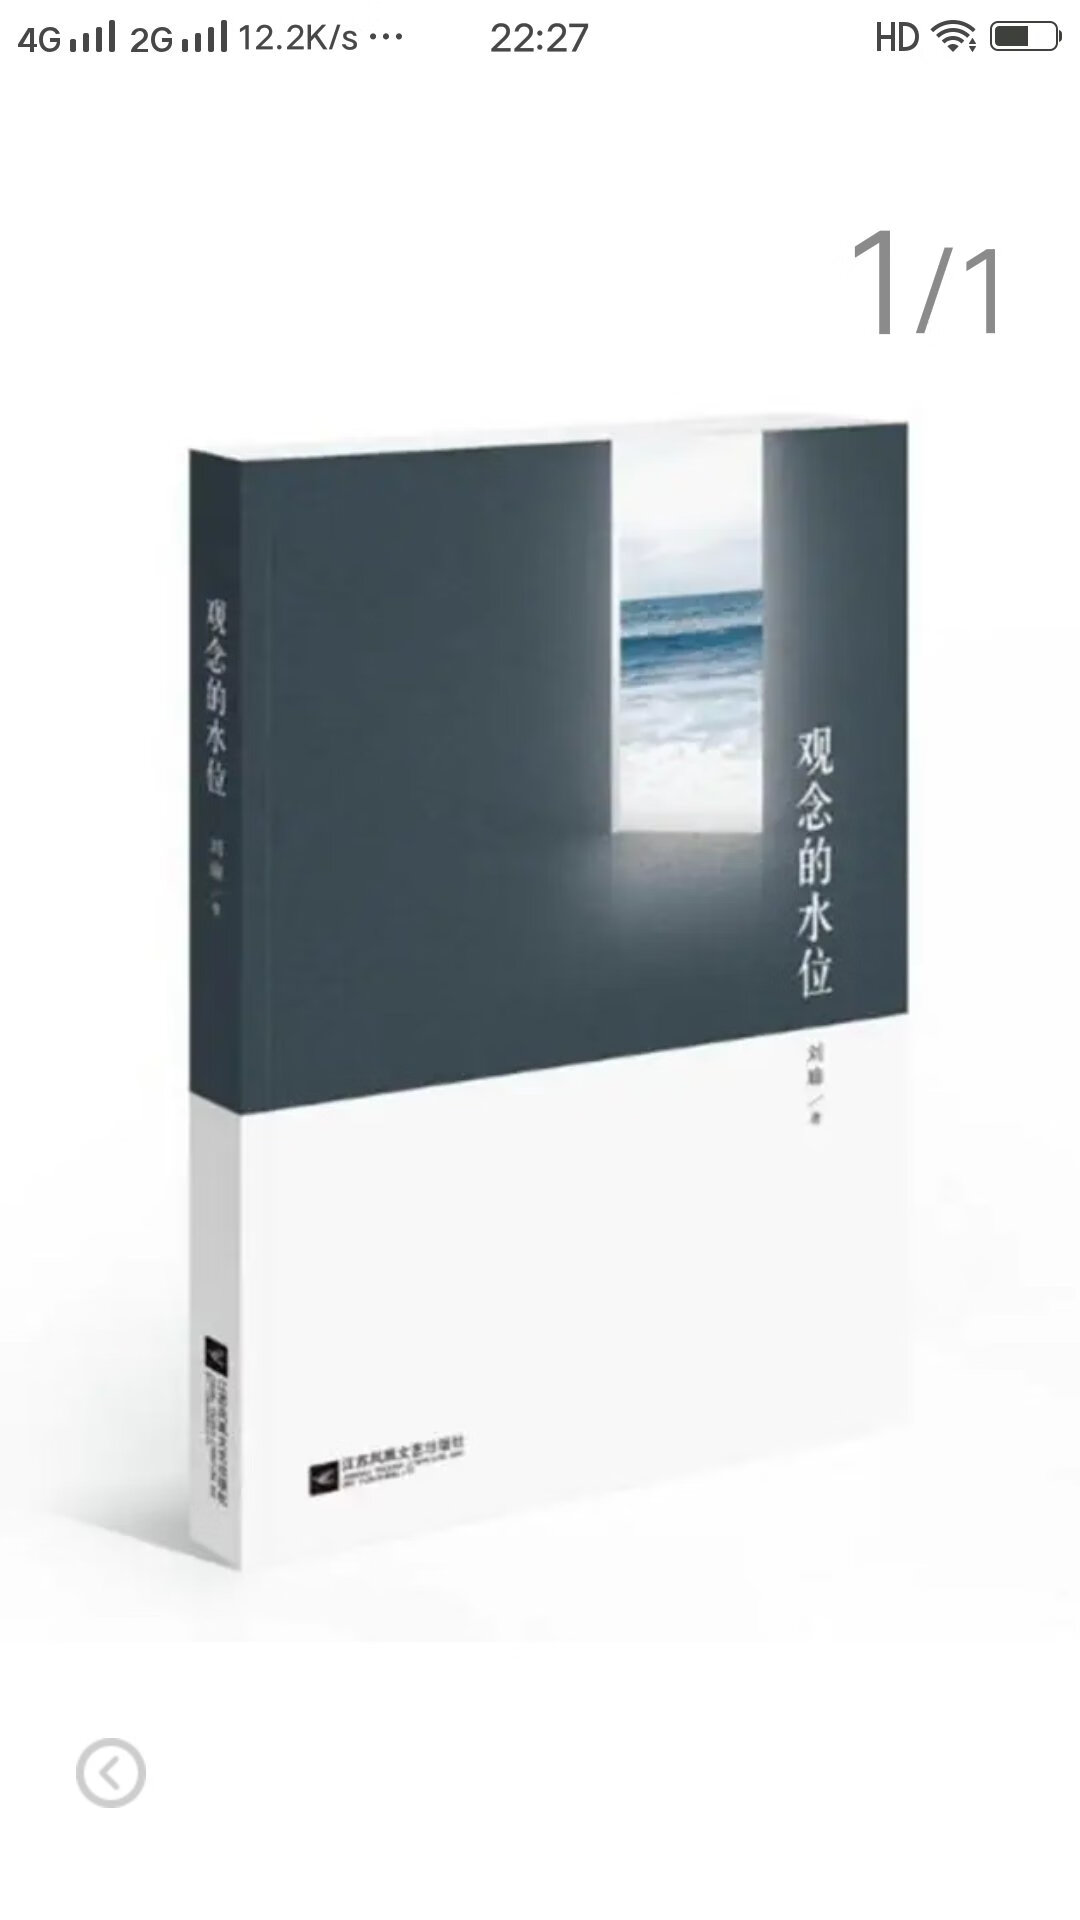 刘瑜的书很有特色   书质量很好  的快递速度也非常快